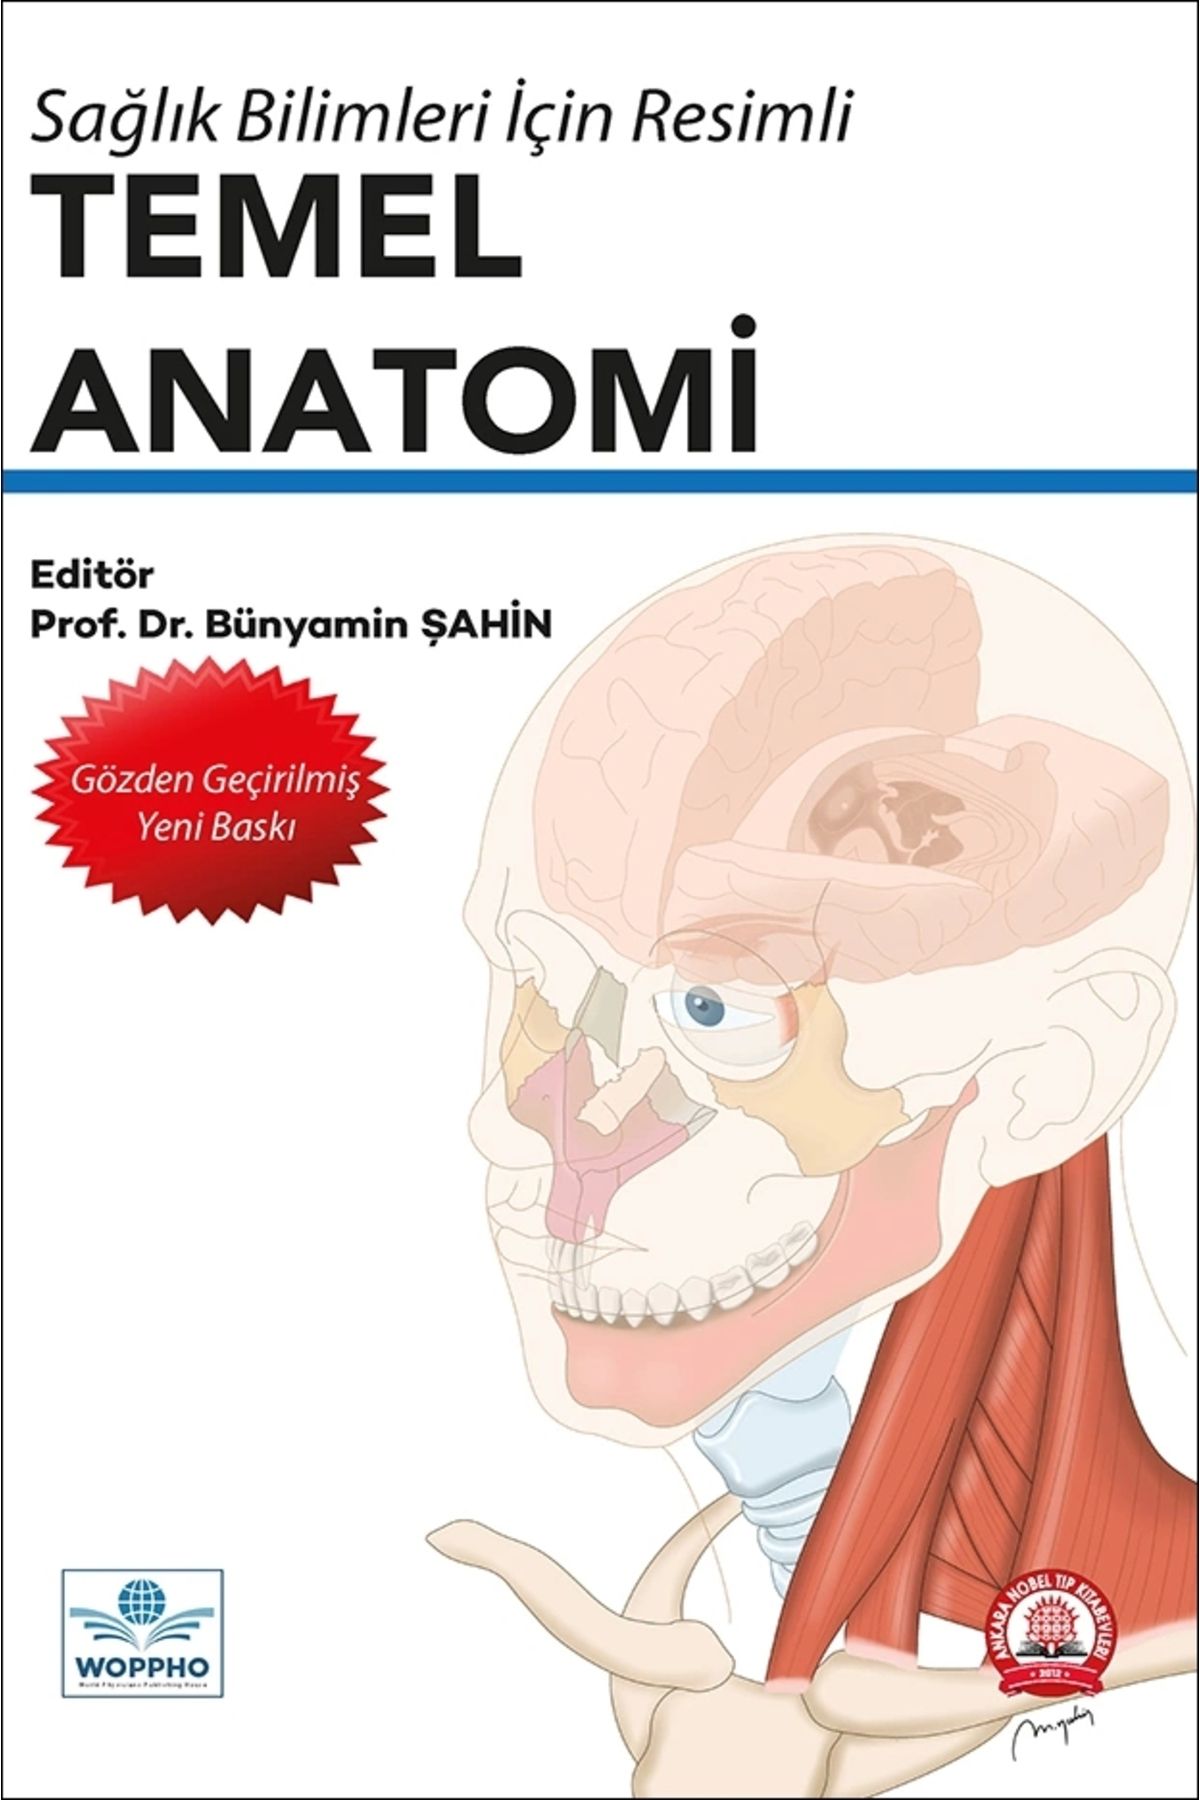 Ankara Nobel Tıp Kitabevi Sağlık Bilimleri İçin Resimli Temel Anatomi